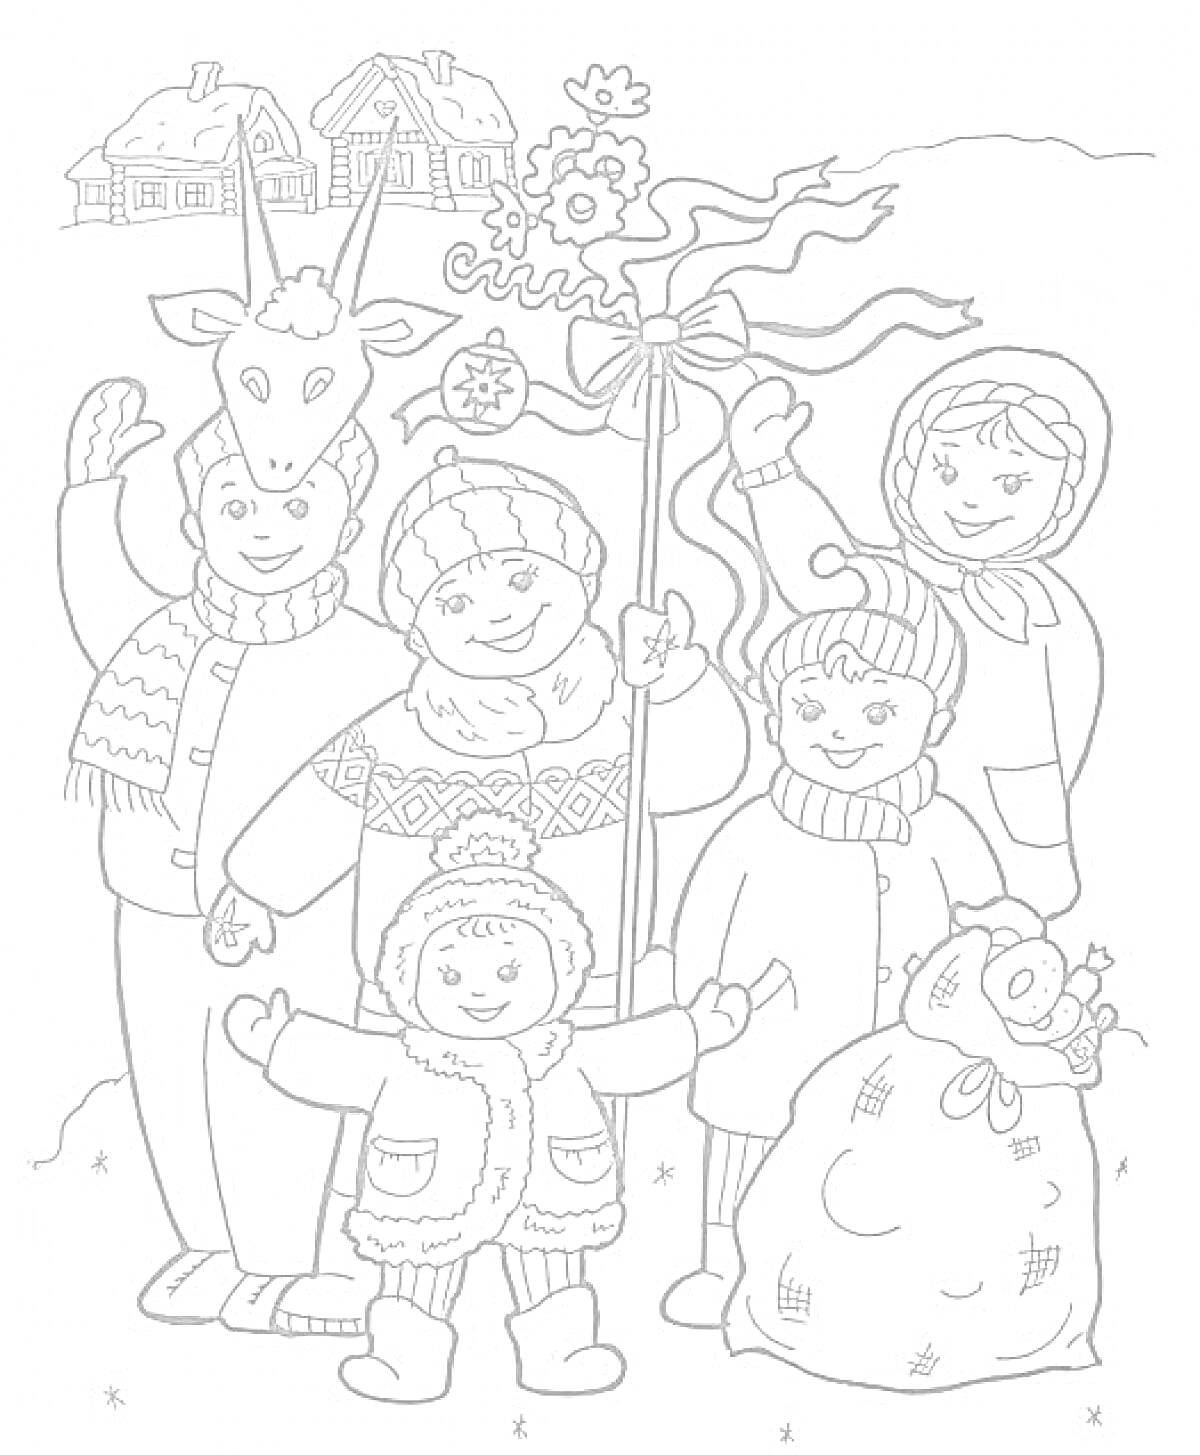 Колядки — группа людей в зимней одежде с символами колядок, козлиной головой, звездой и мешком, дома в снегу на заднем плане